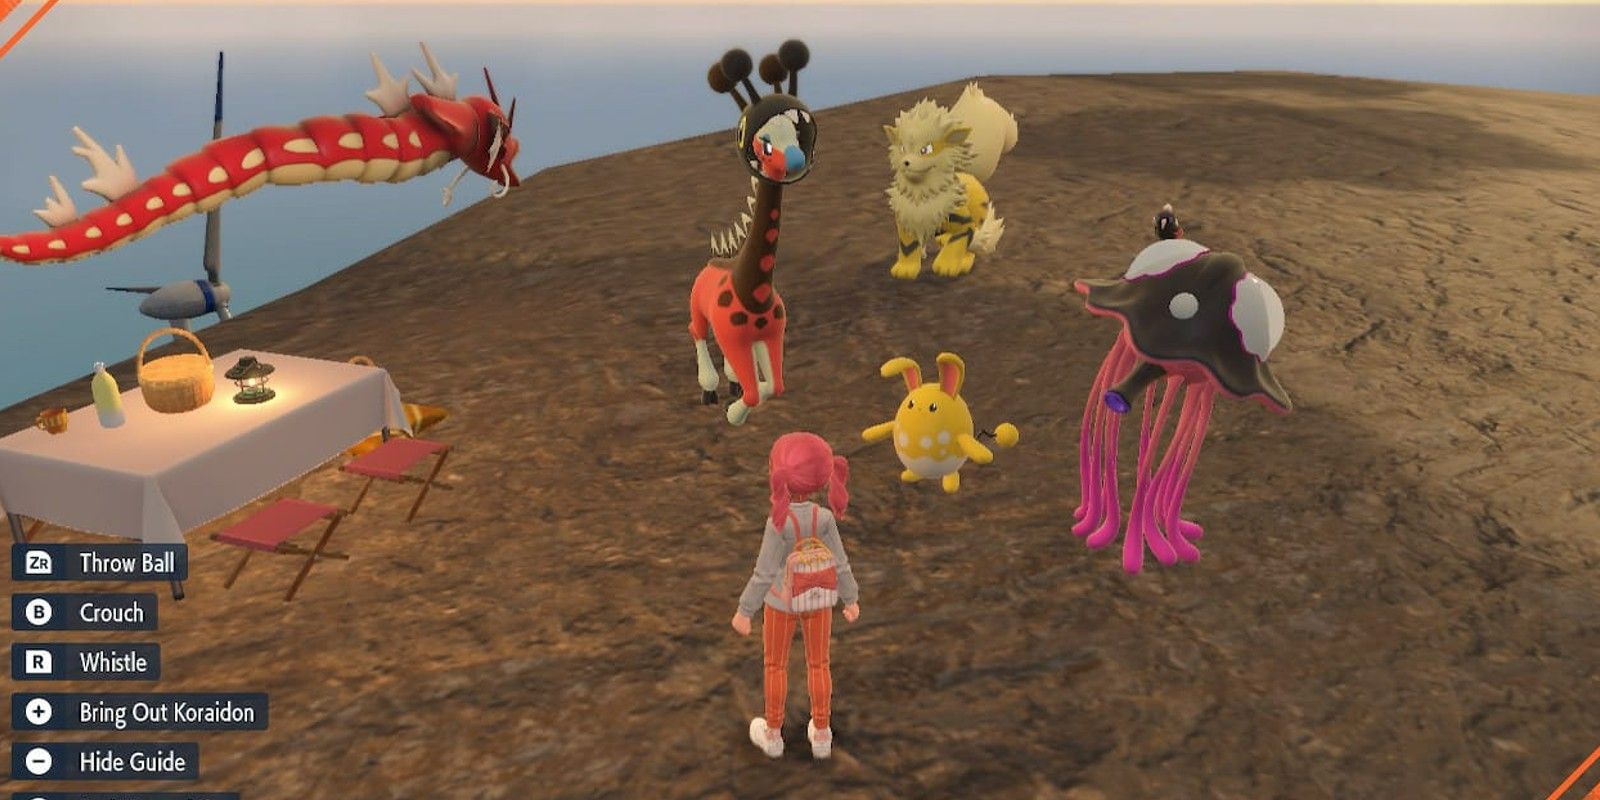 Equipe brilhante encontrada ao capturar Pokémon brilhantes isolados em Pokémon Scarlet e Violet